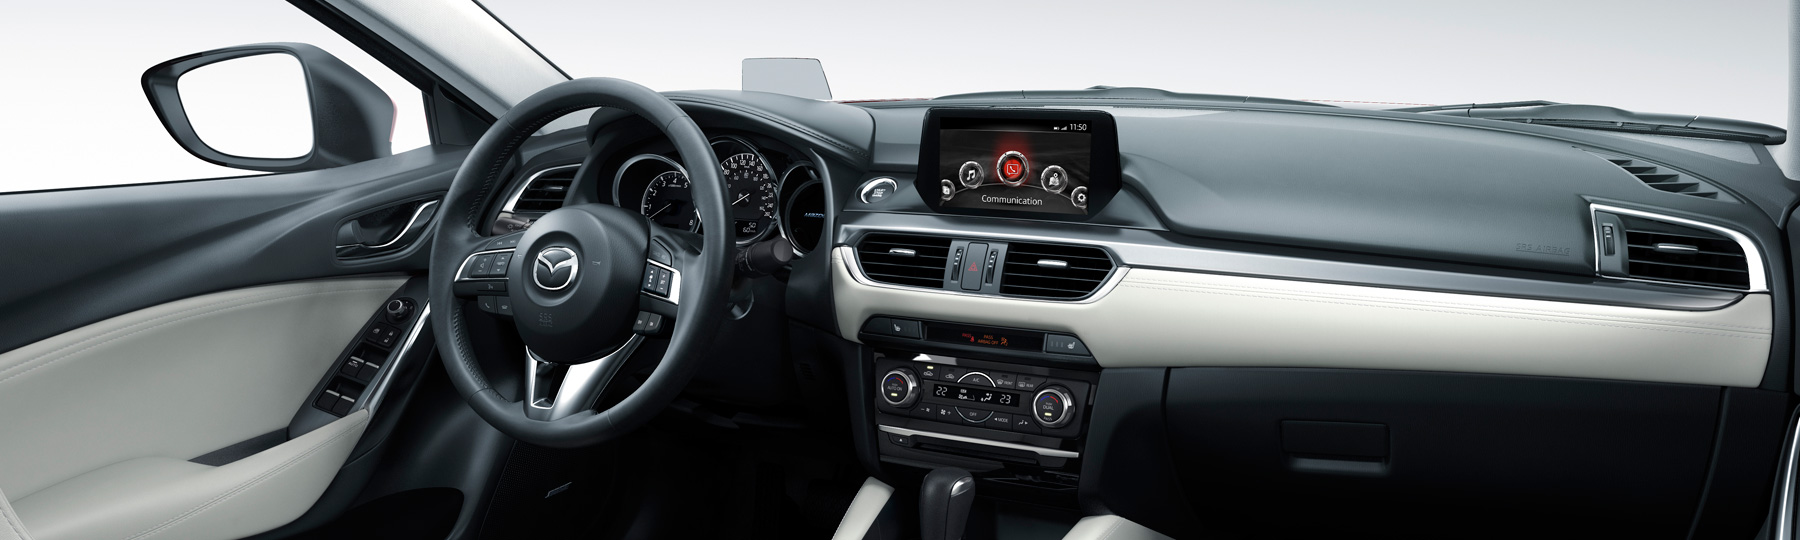 2016 Mazda6 GS Interior Dashboard